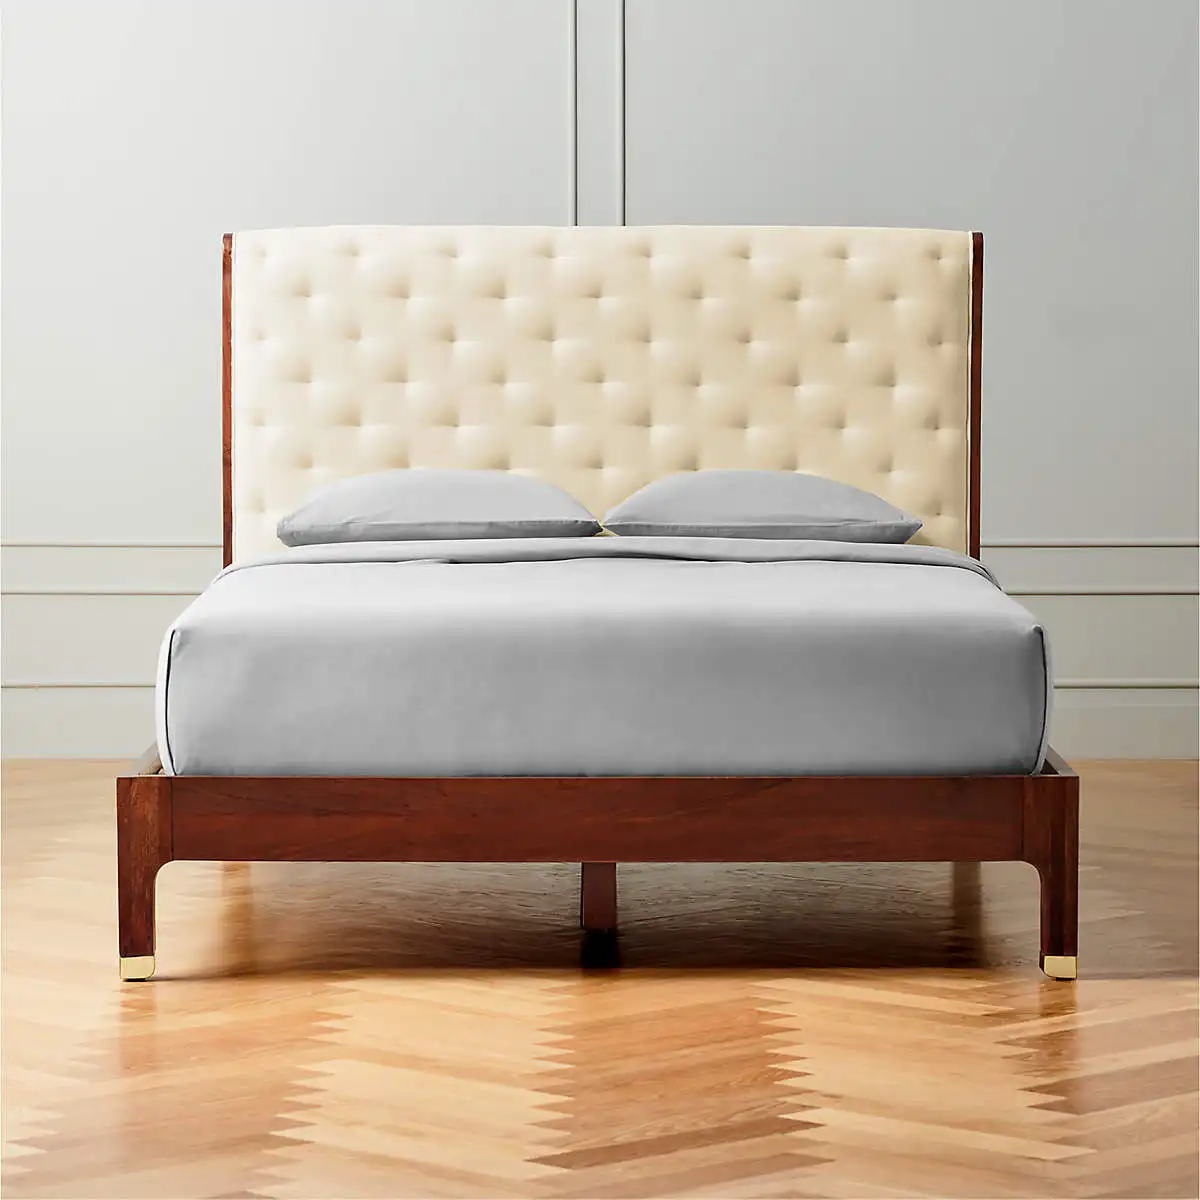 سرير ملكي مصنوع من خشب الساج الصلب وورق سرير مبطن باللون البني المخملي الأبيض العاجي